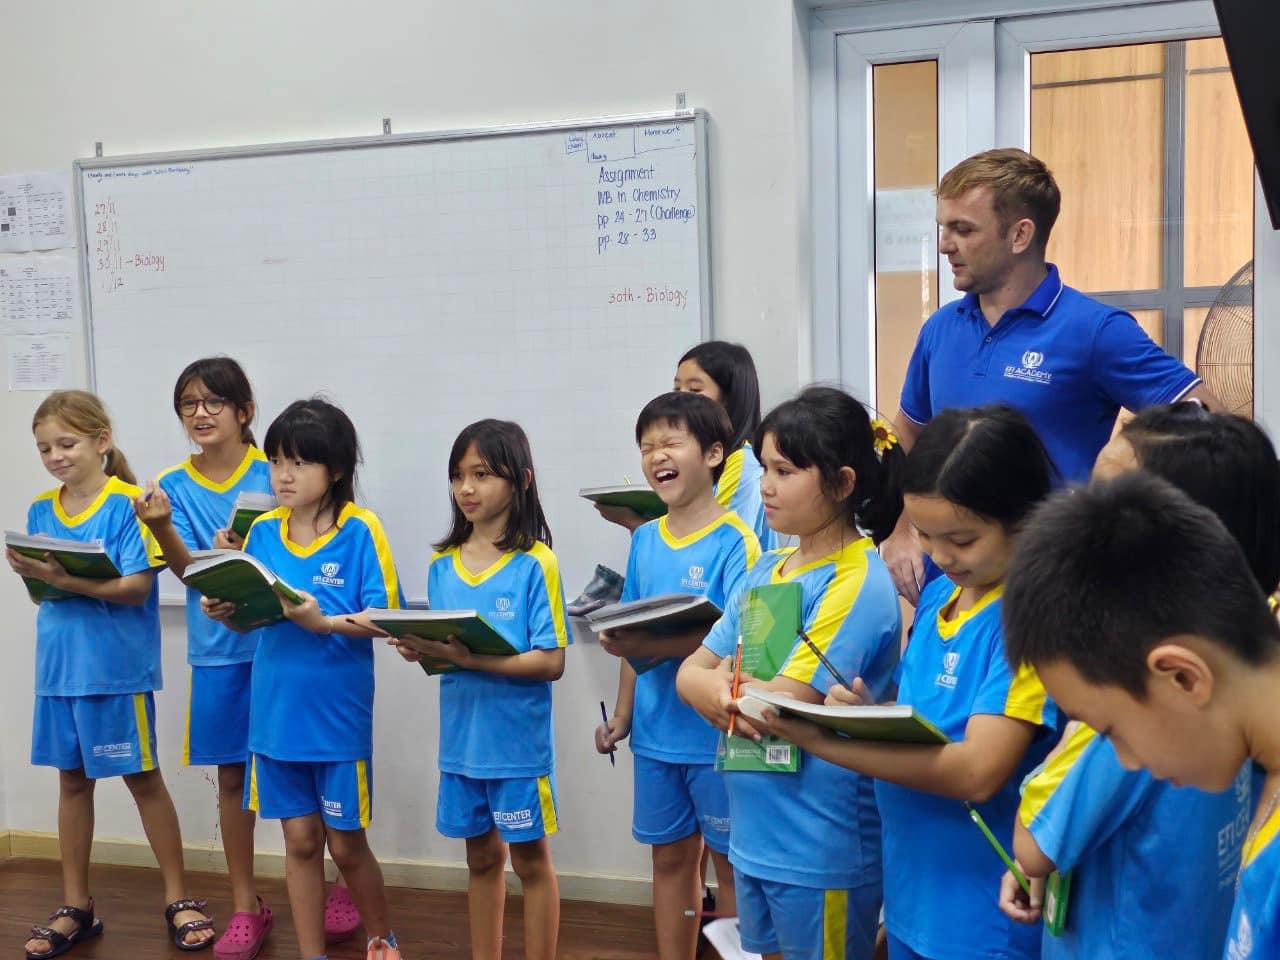 EFI Academy - International School in Nha Trang